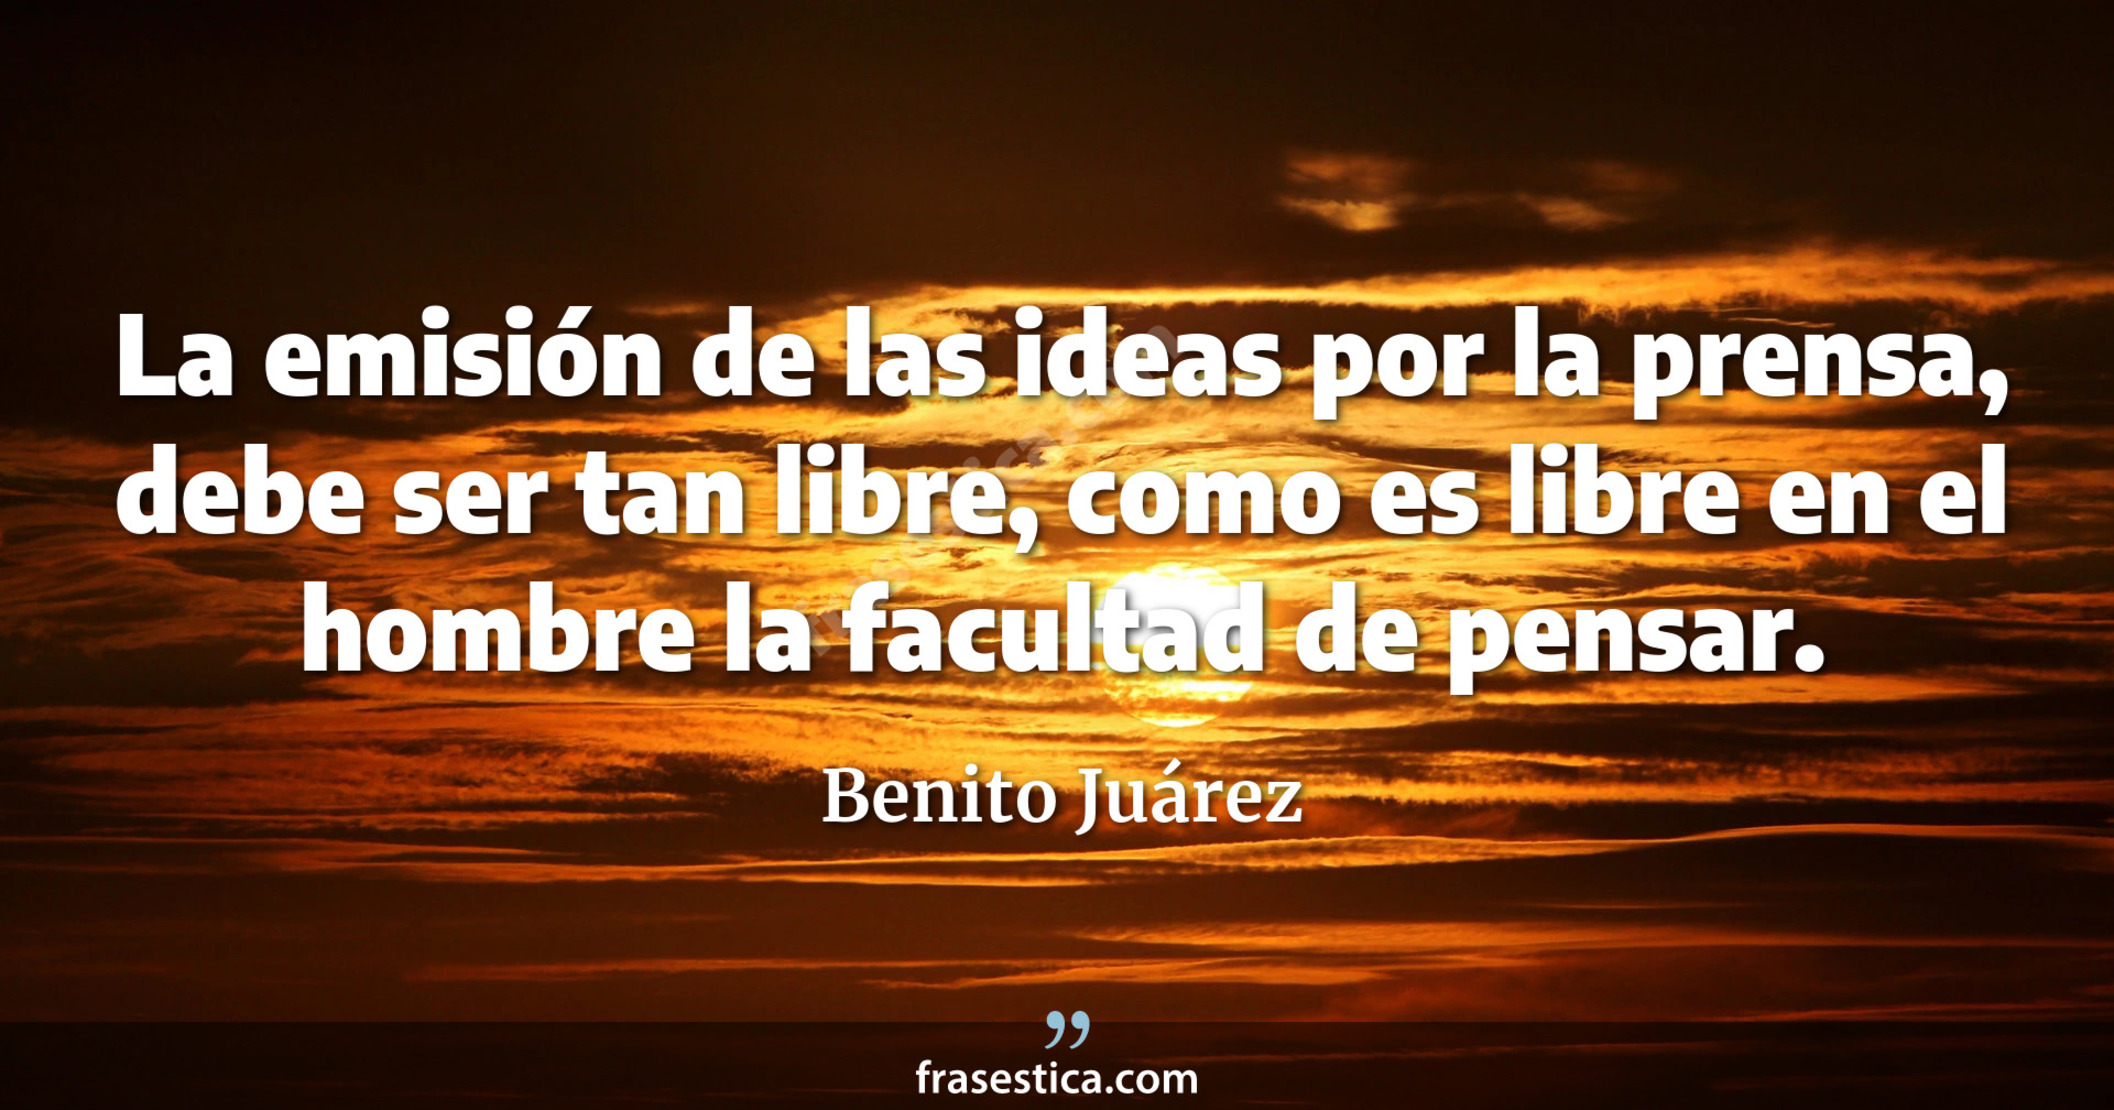 La emisión de las ideas por la prensa, debe ser tan libre, como es libre en el hombre la facultad de pensar. - Benito Juárez